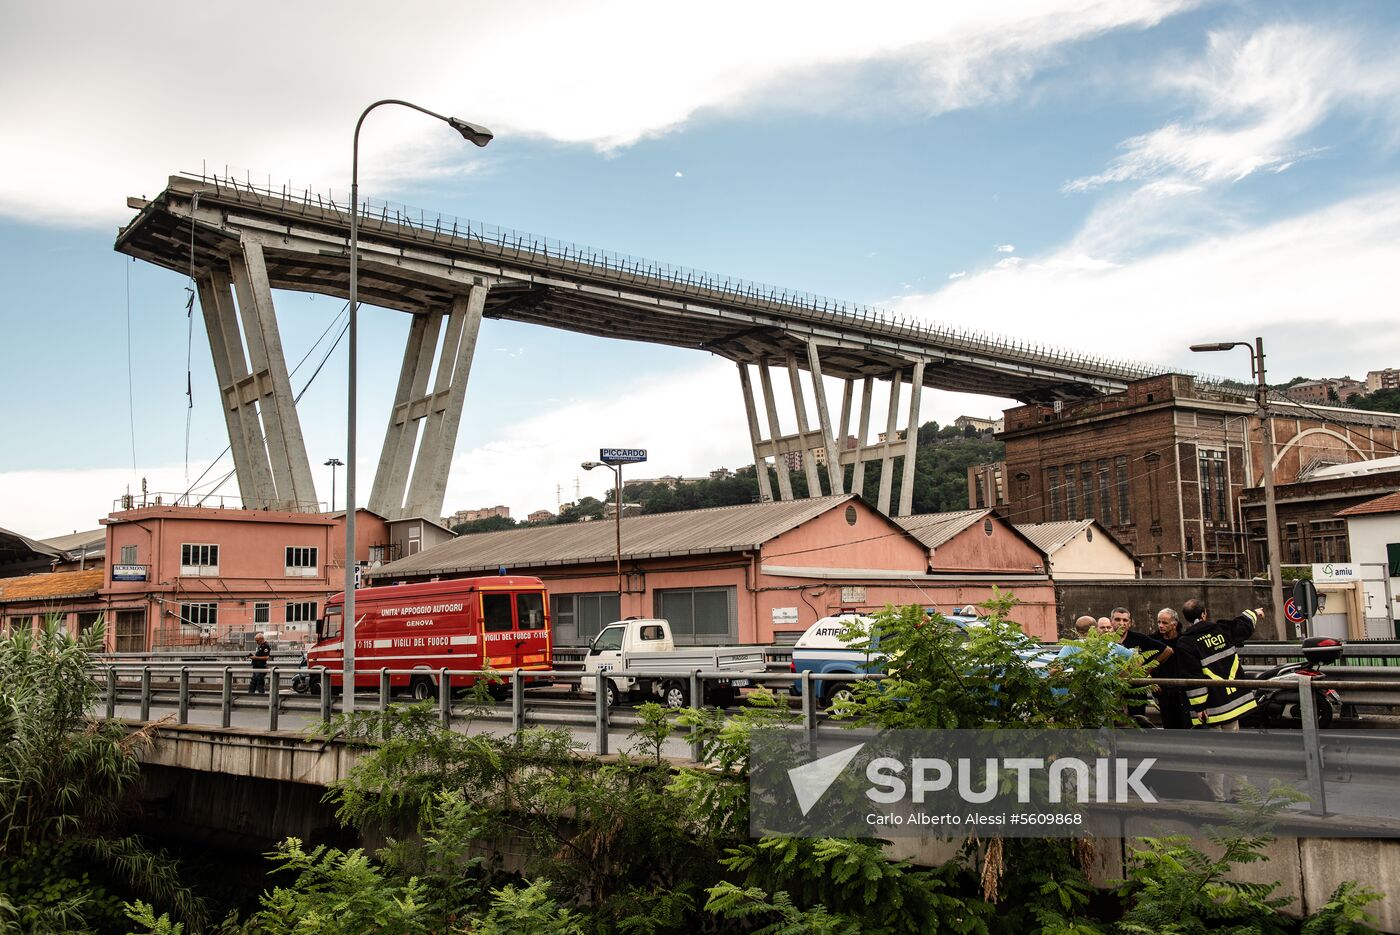 Highway bridge collapses in Genoa